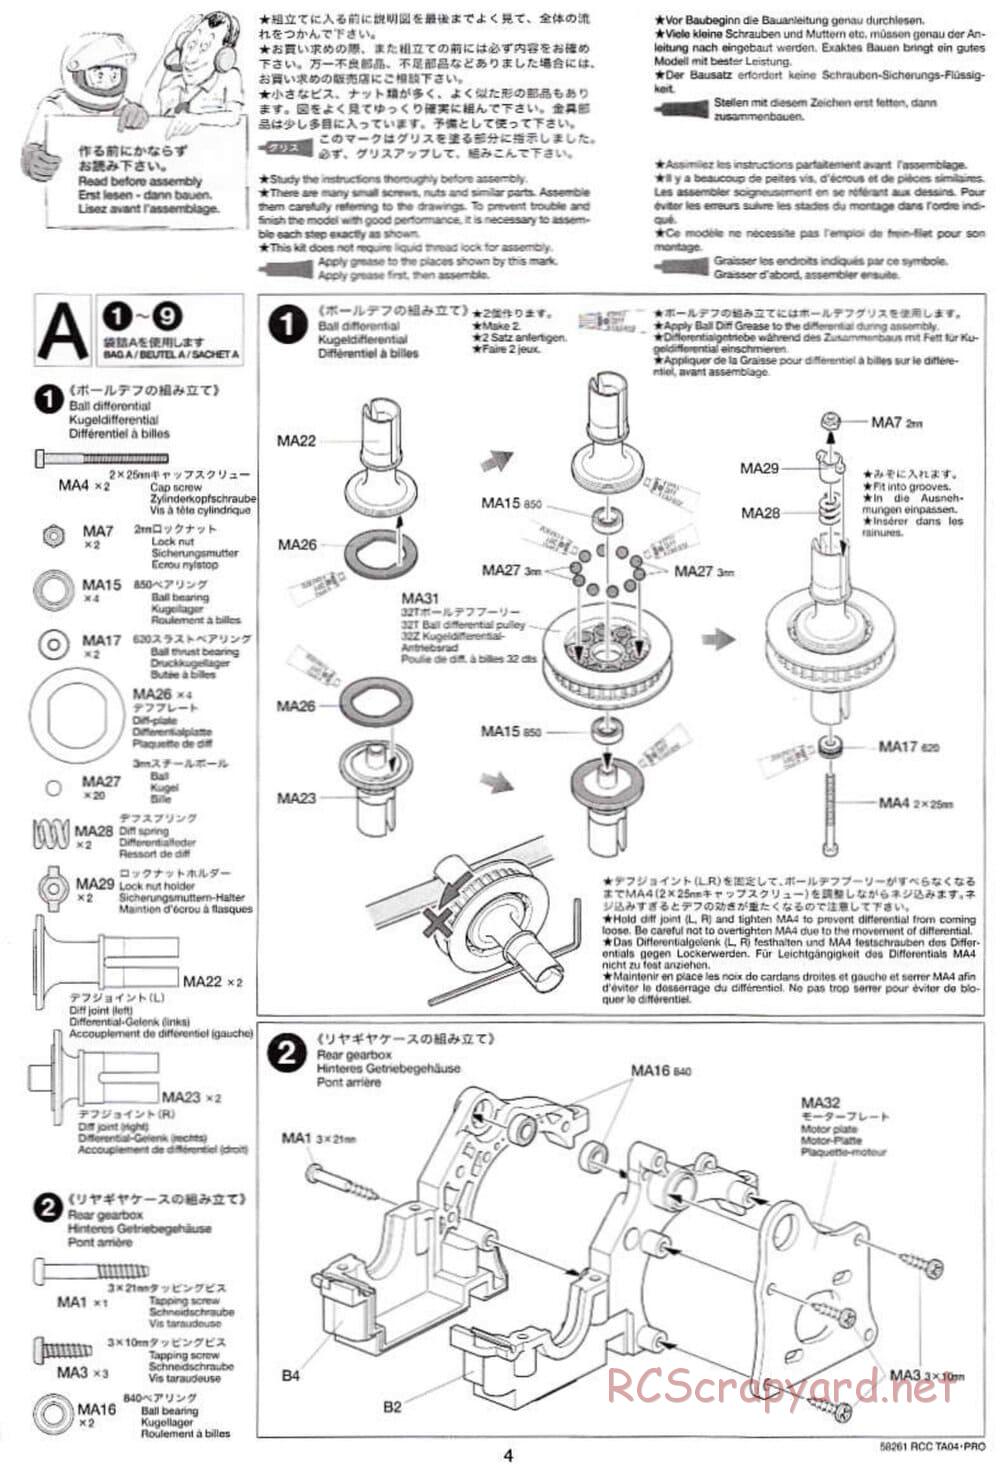 Tamiya - TA-04 Pro Chassis - Manual - Page 4